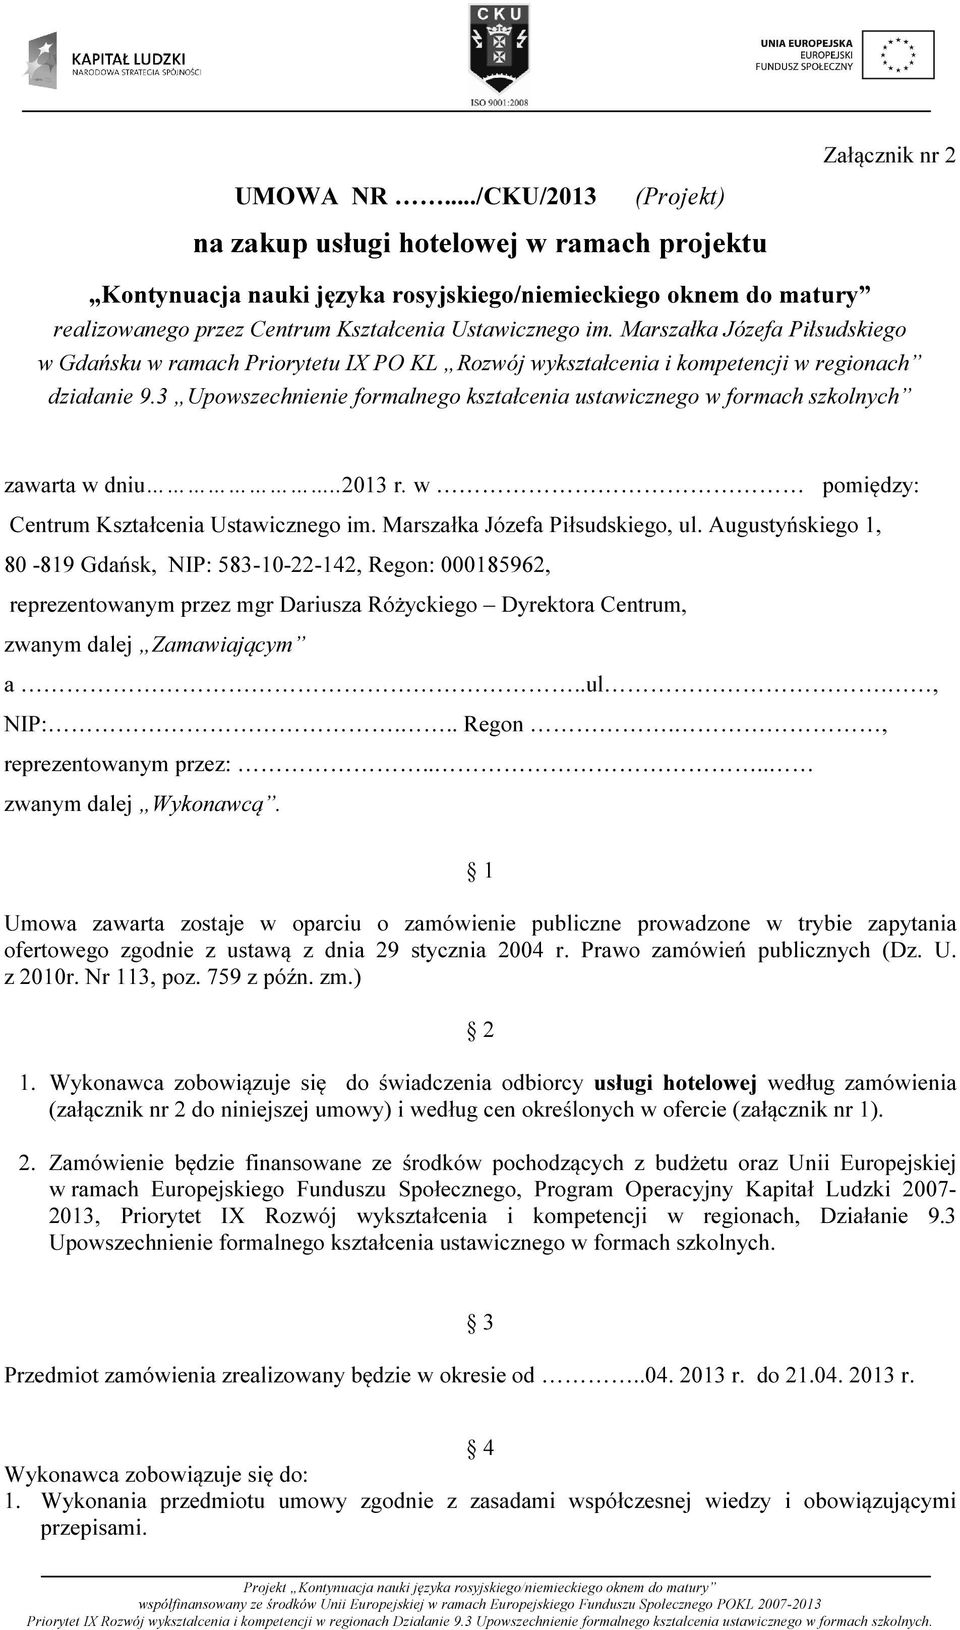 Marszałka Józefa Piłsudskiego w Gdańsku w ramach Priorytetu IX PO KL Rozwój wykształcenia i kompetencji w regionach działanie 9.